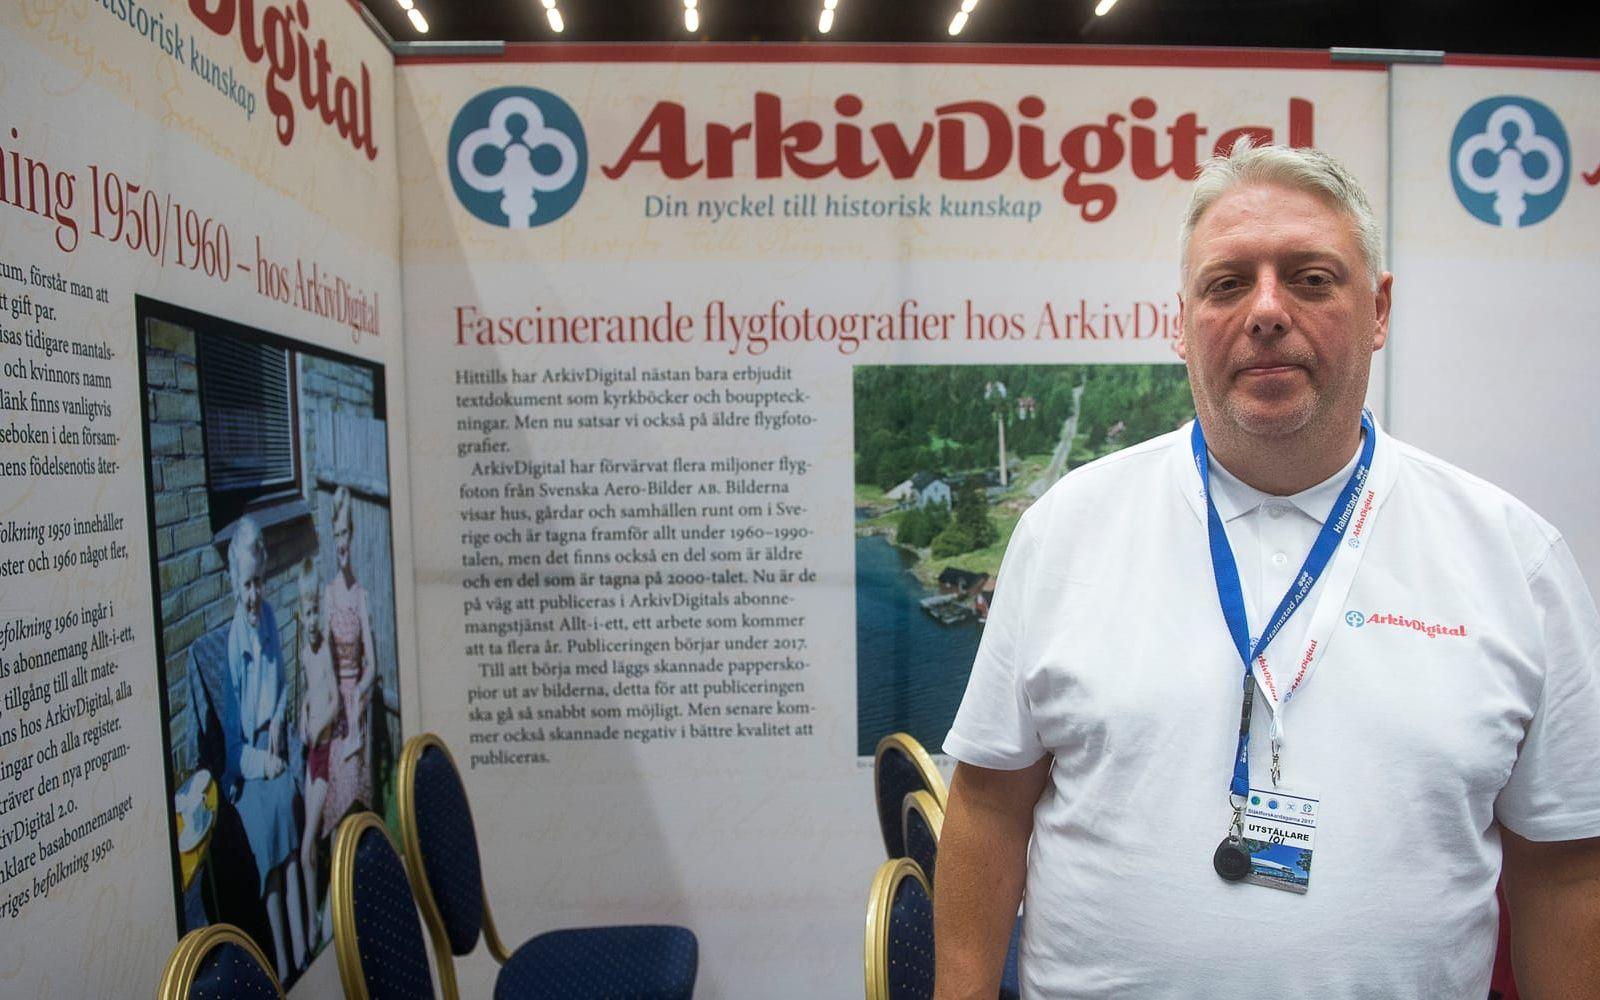 Mikael Karlsson är VD för ArkivDigital som är huvudsponsor för Släktforskardagarna. Han berättar att man hela tiden försöker hitta nya spår, och att man nu satsar mycket på gamla flygfoton över de svenska gårdarna.